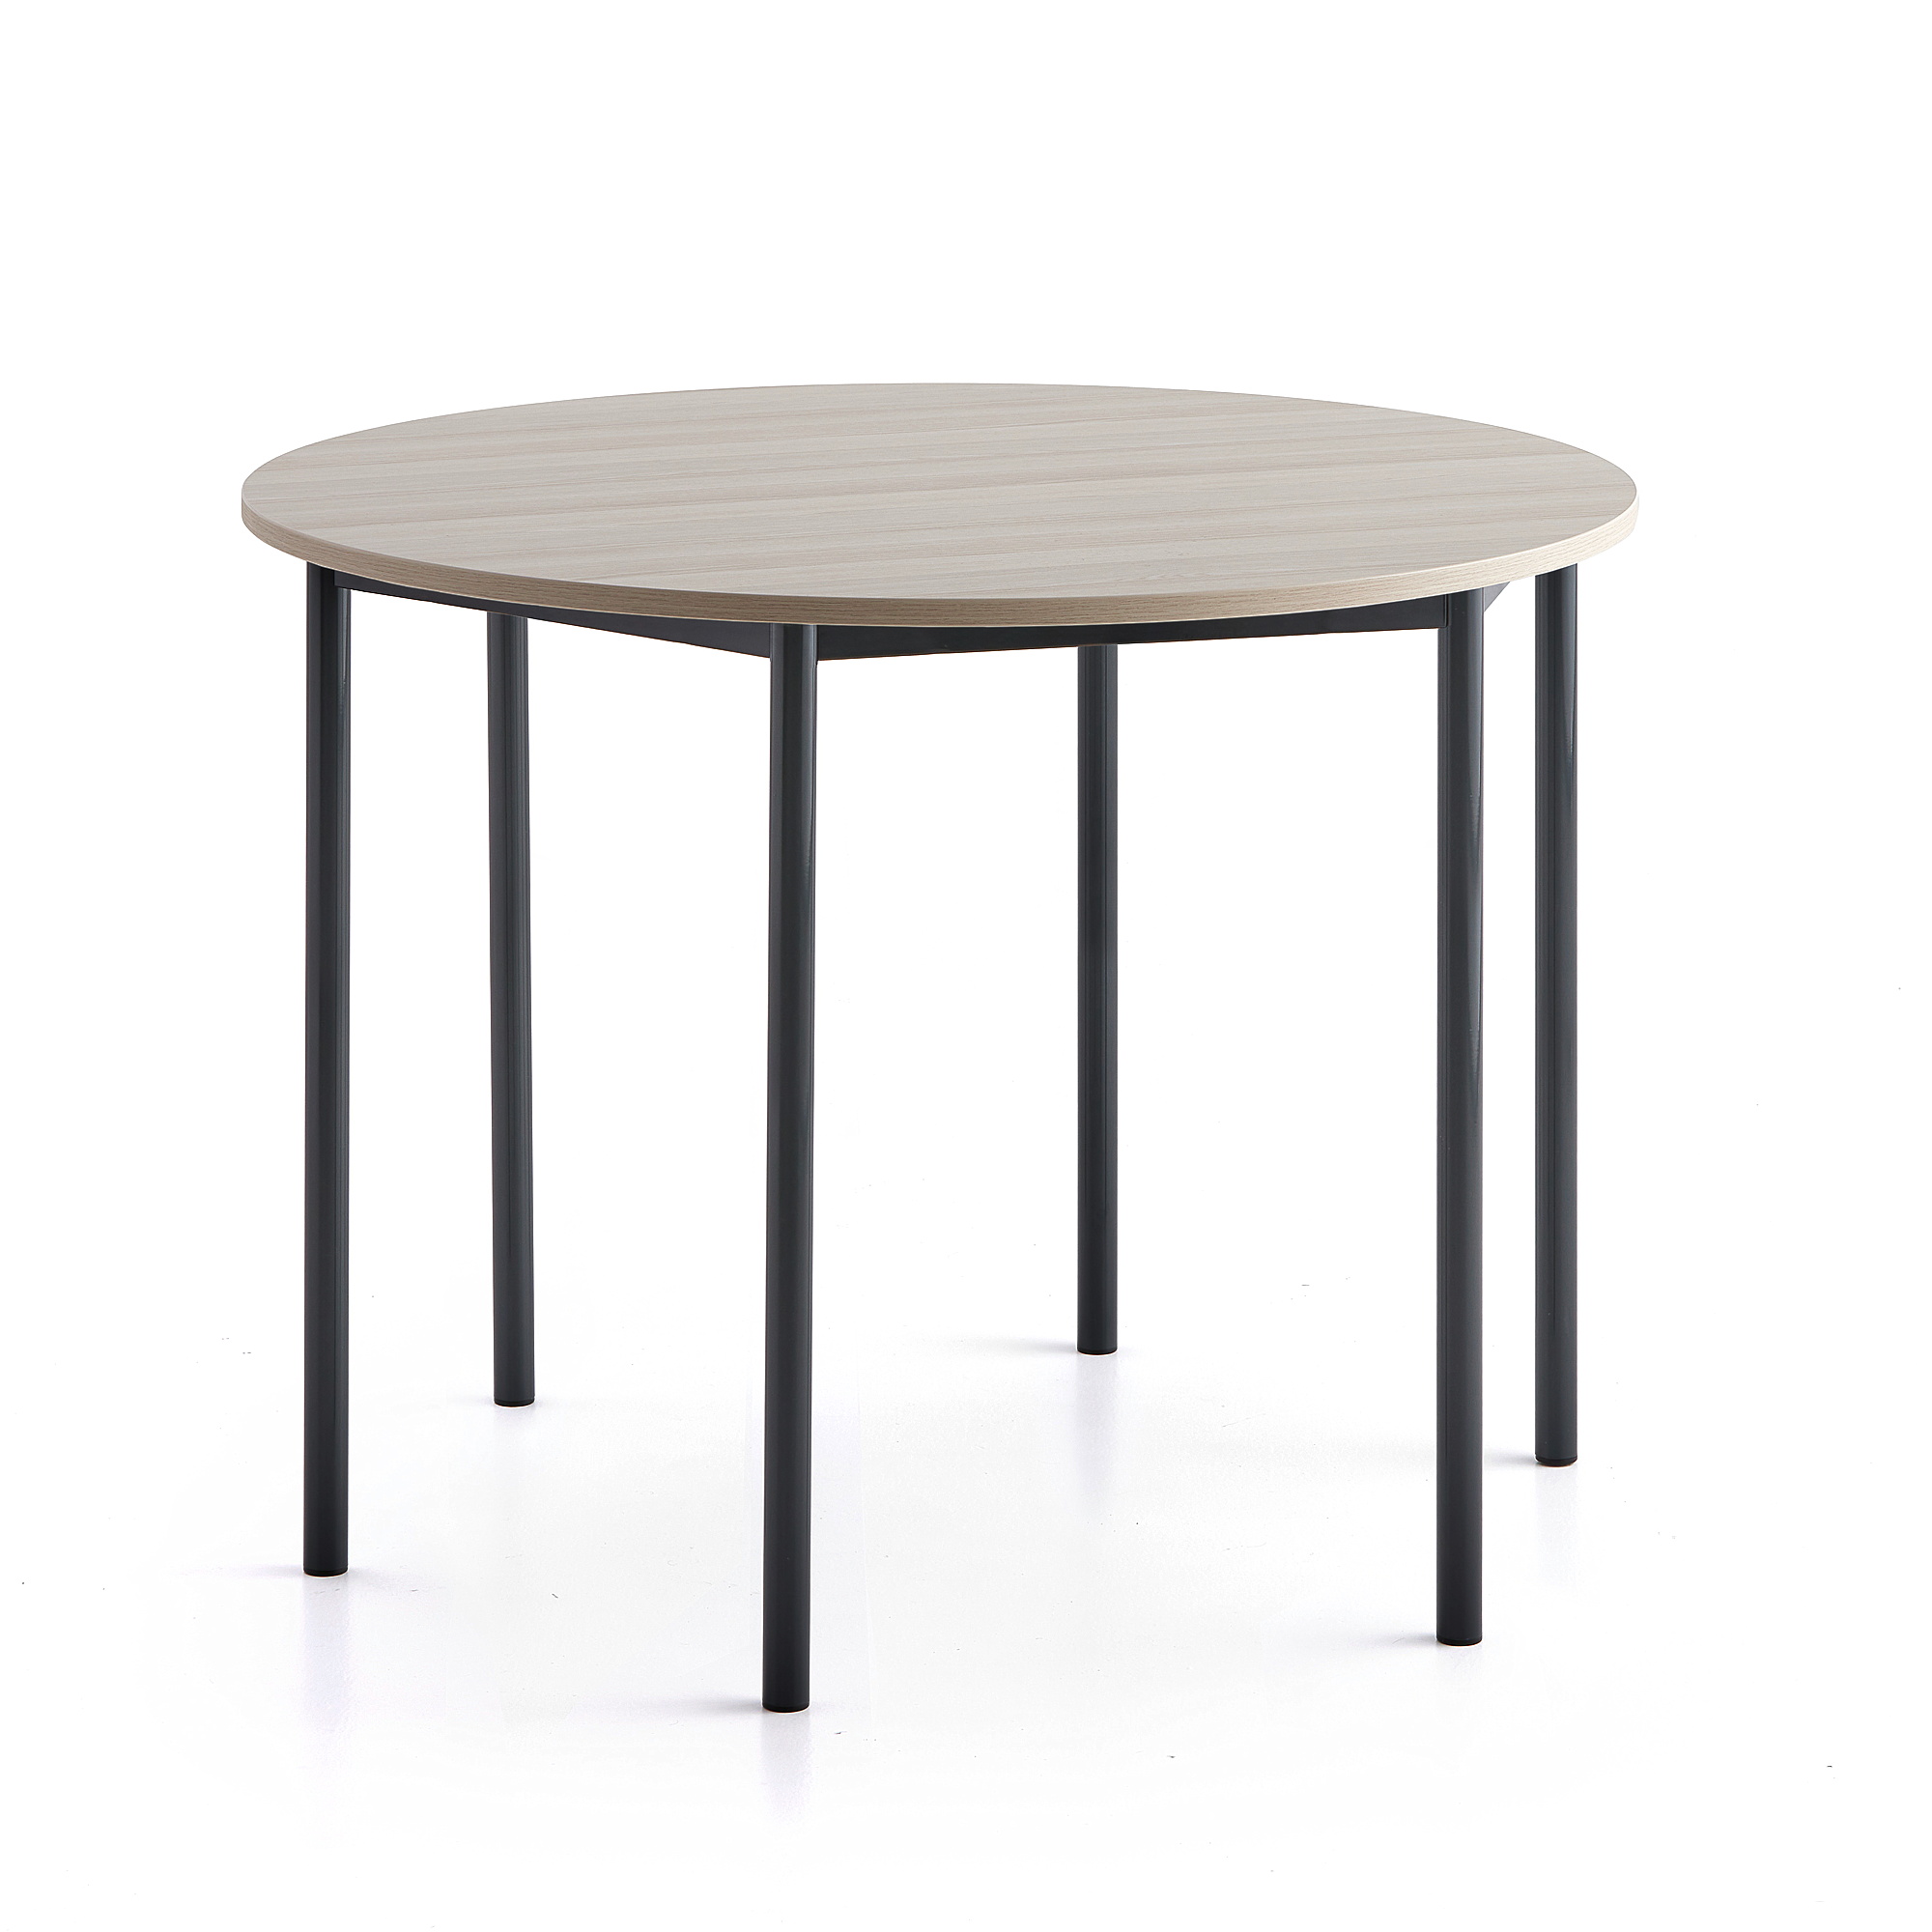 Stůl SONITUS PLUS, Ø1200x900 mm, antracitově šedé nohy, HPL deska tlumící hluk, jasan